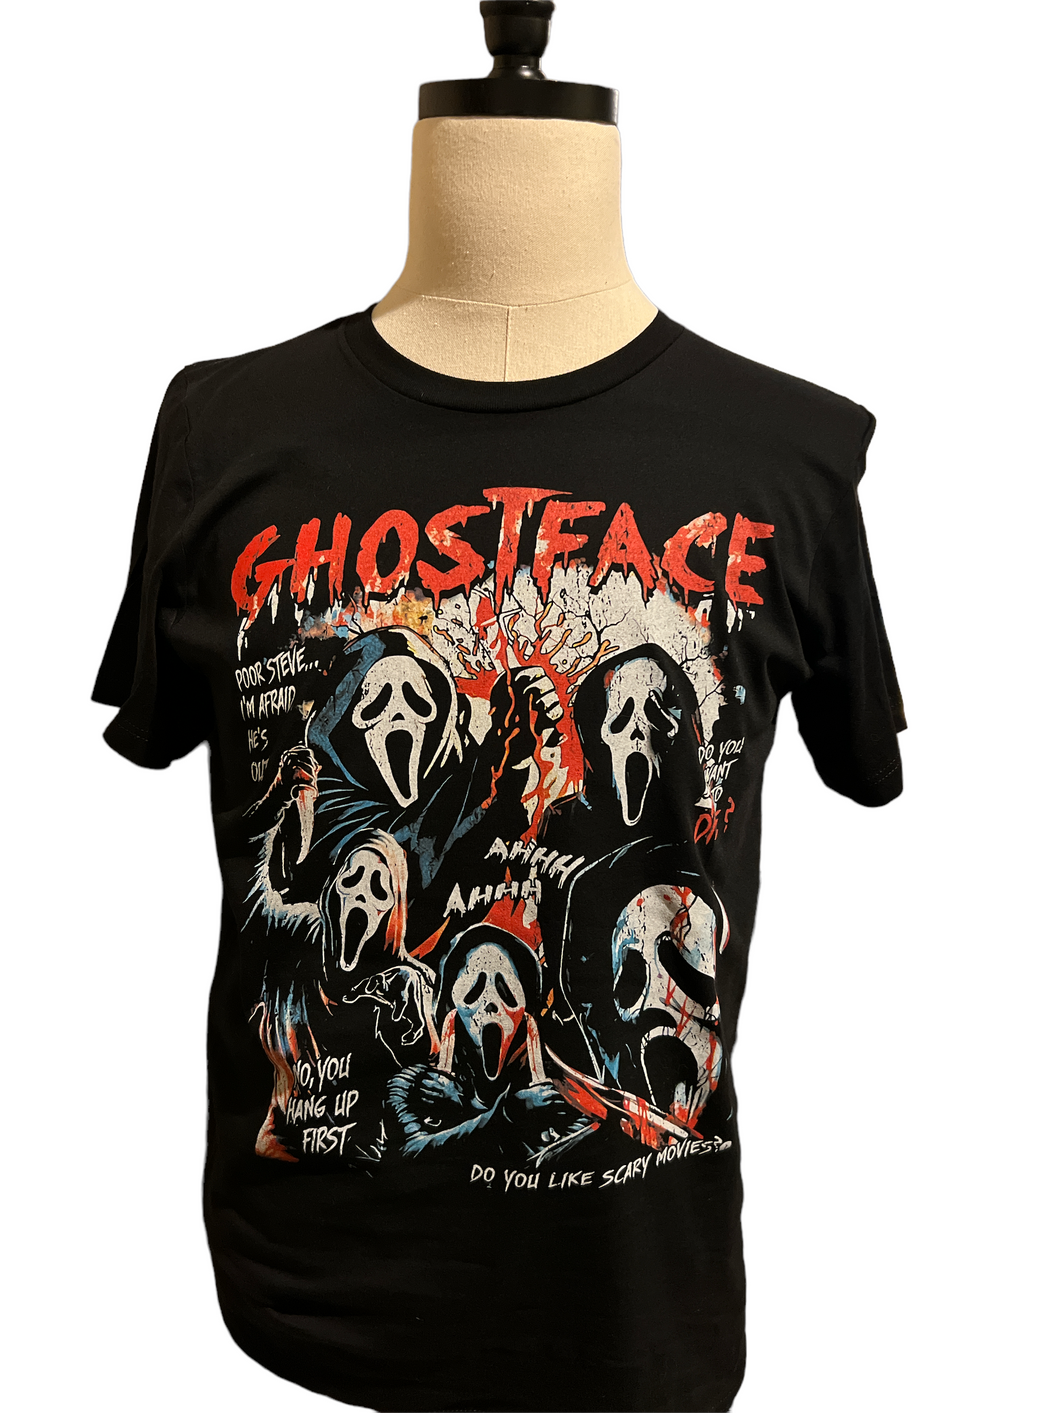 Ghostface t shirt